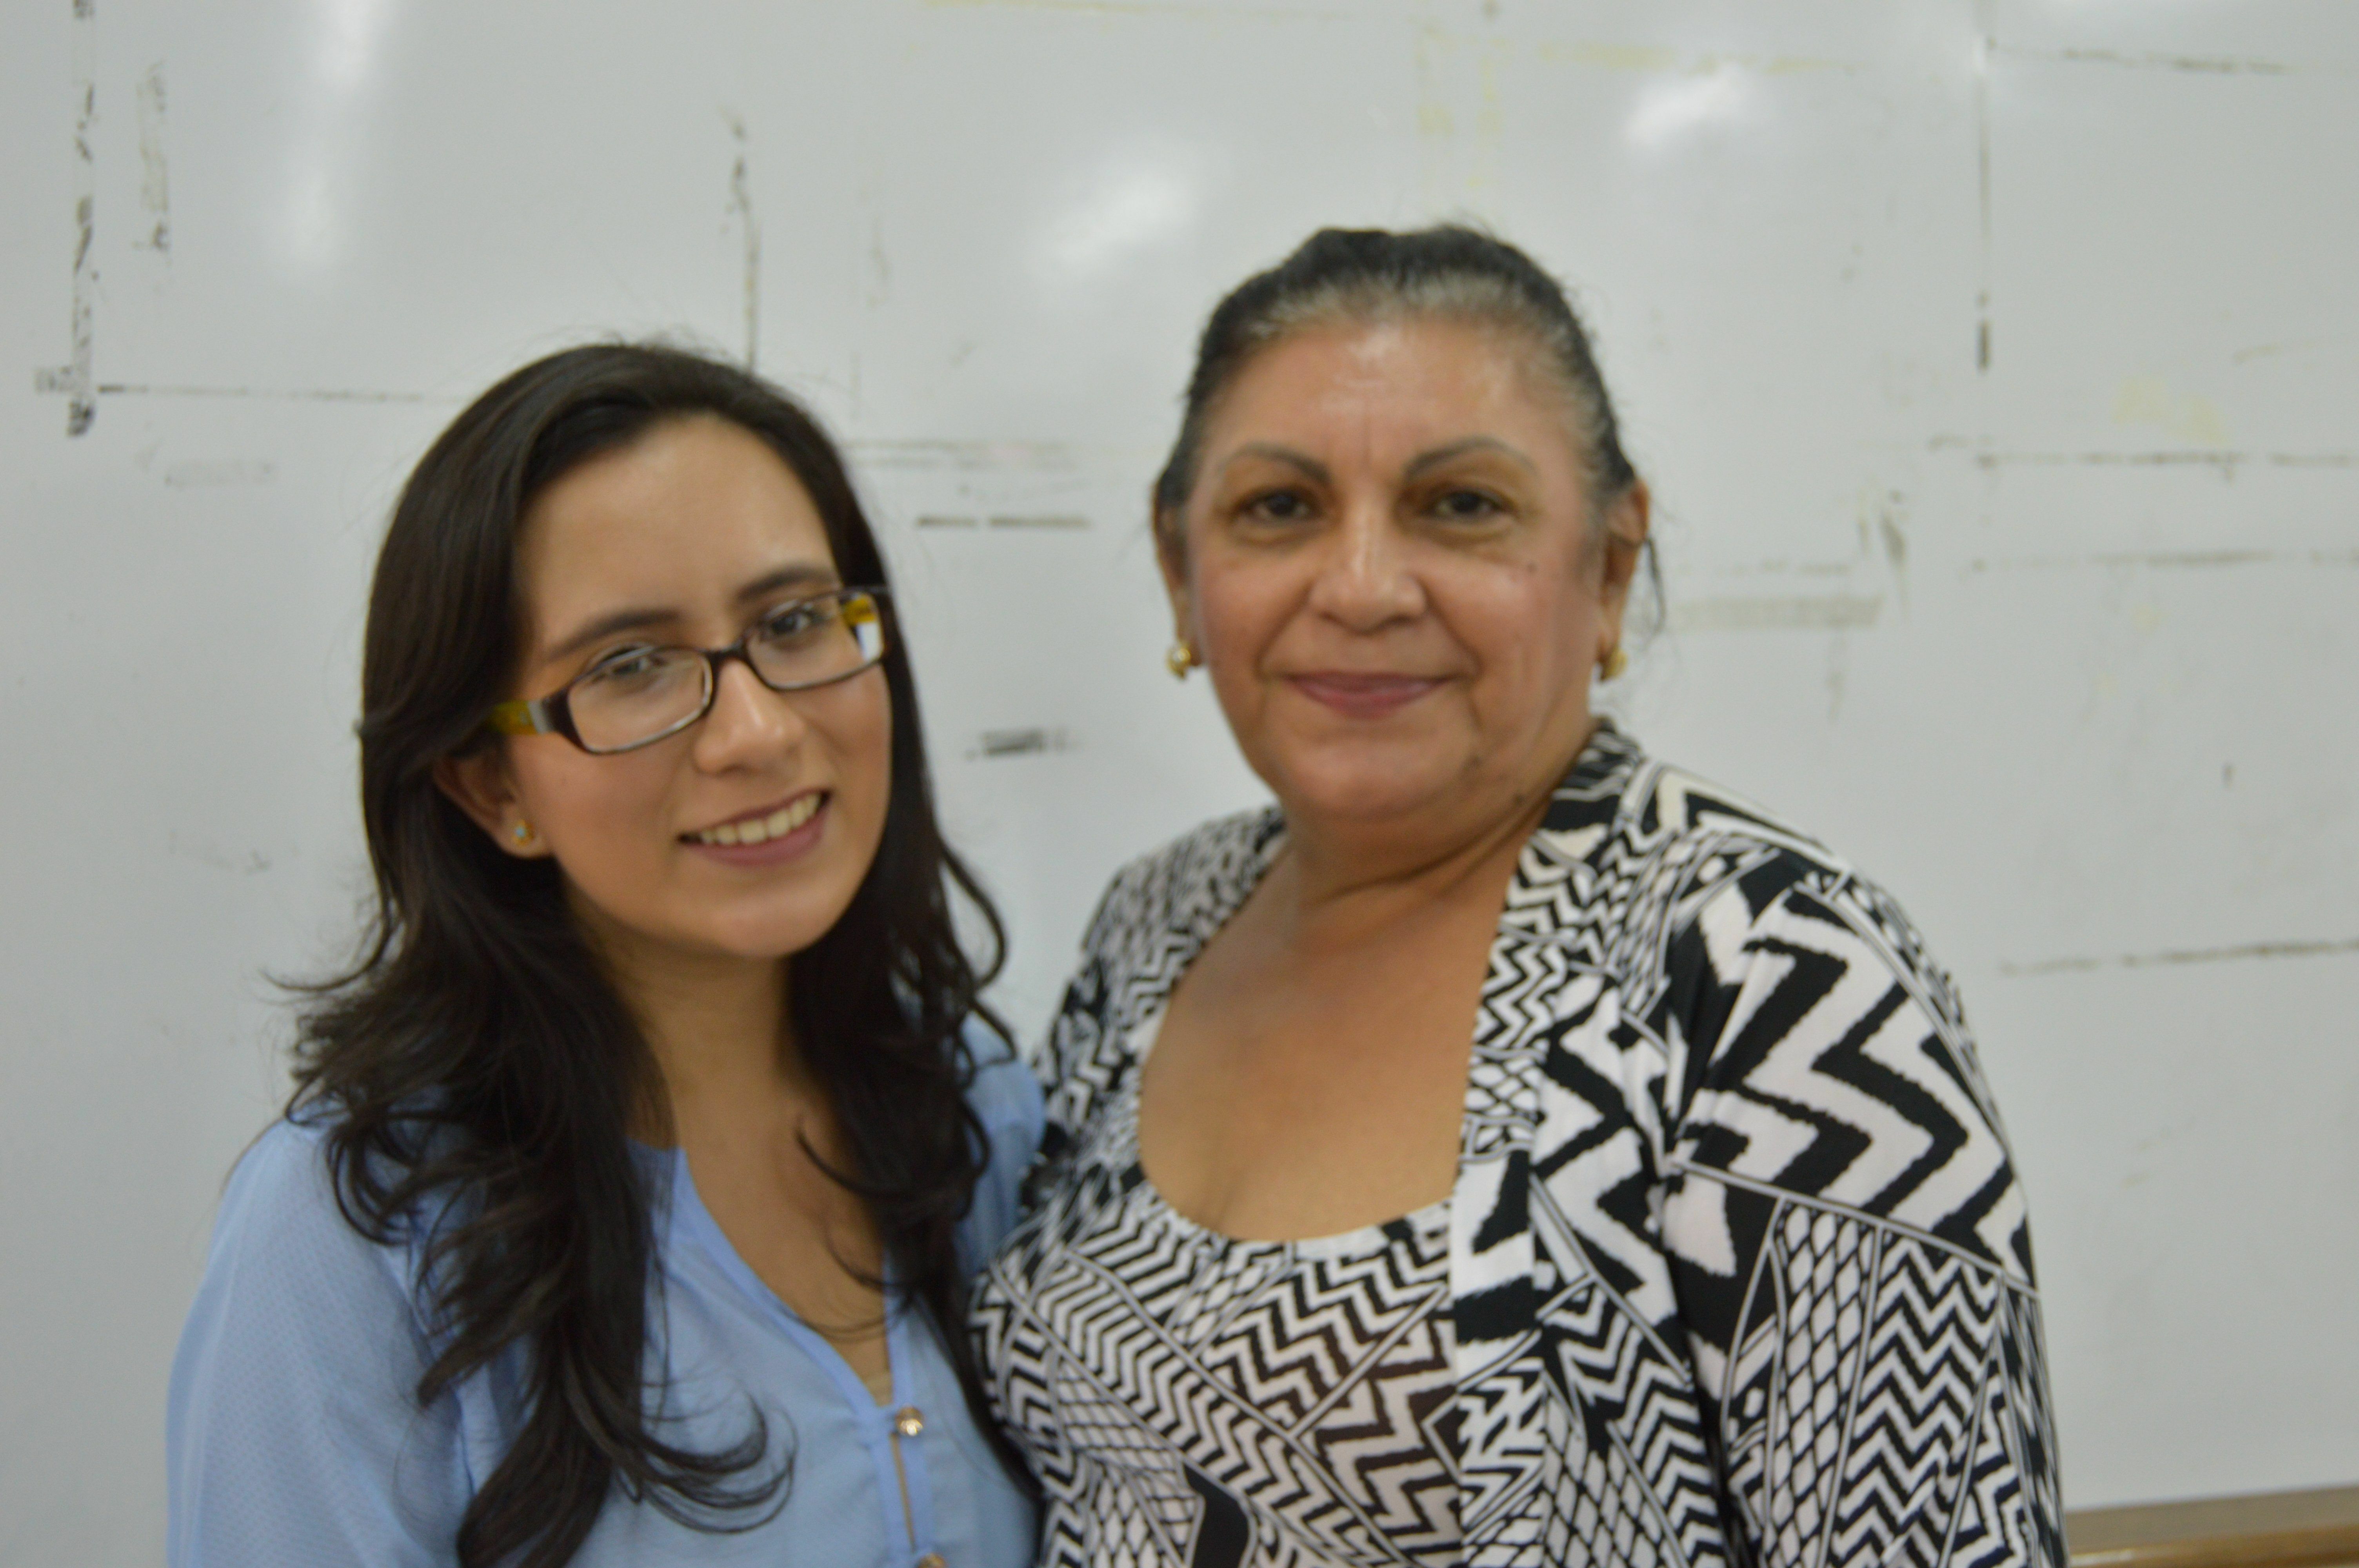 Aluna Fernanda de Souza (esquerda) e Professora Marina Araújo (direita)